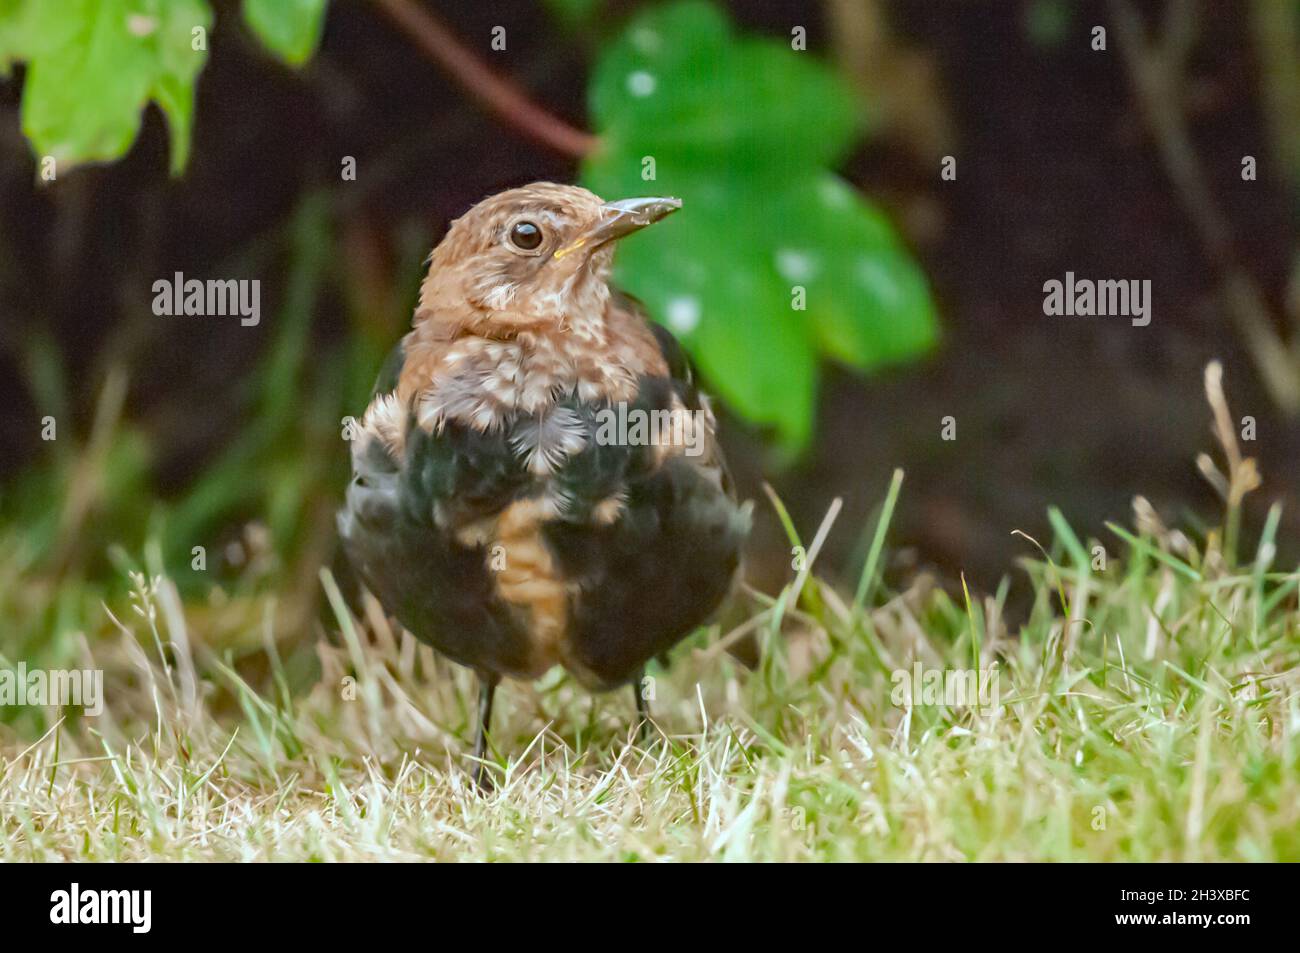 Young bird Blackbird Stock Photo